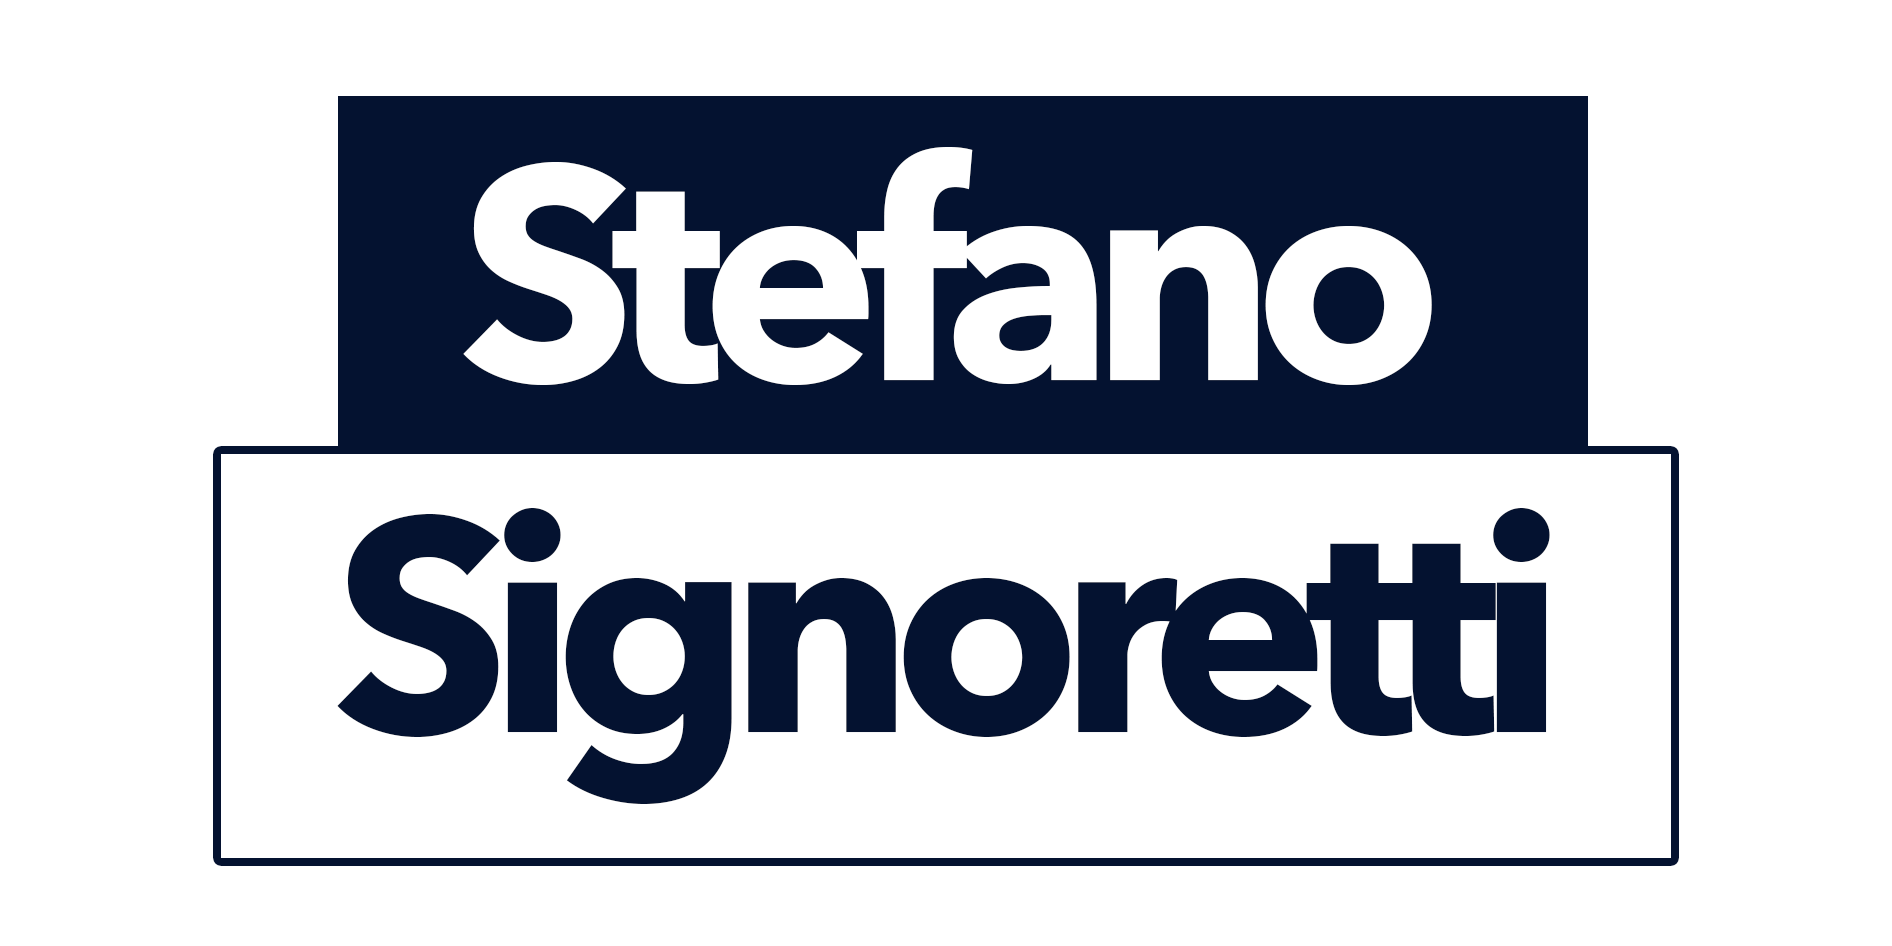 Stefano Signoretti